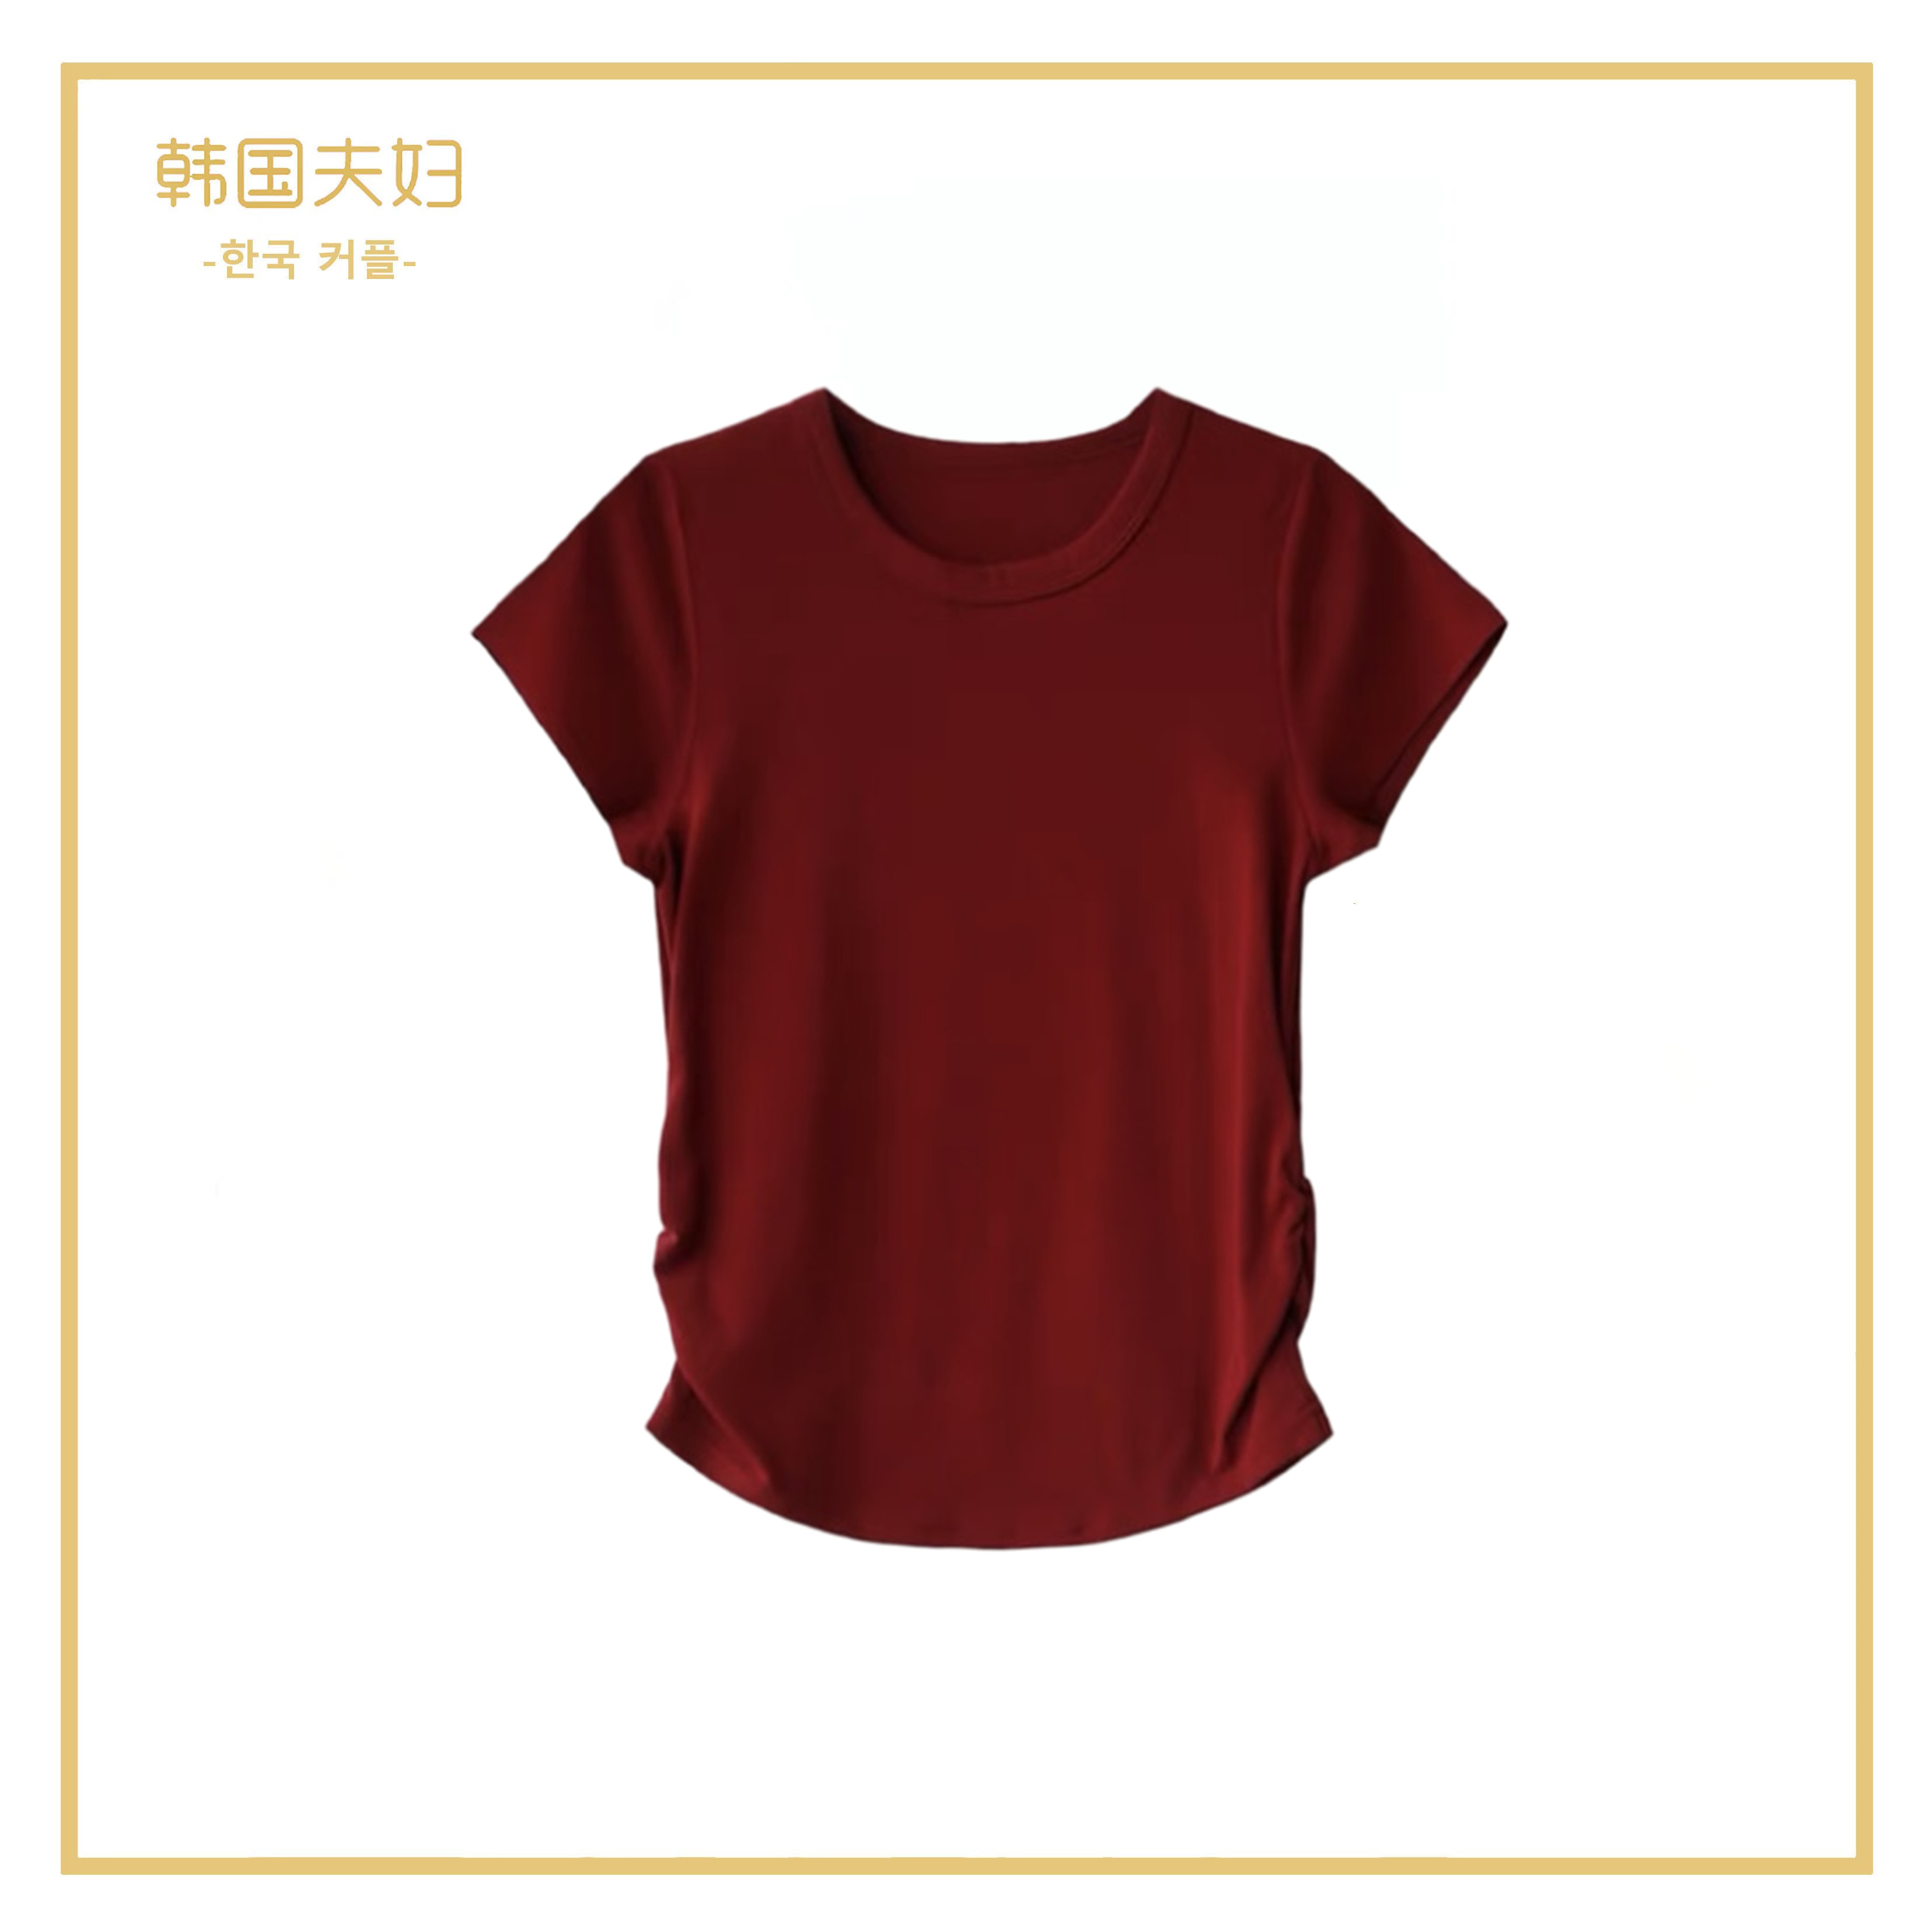 【小田粉丝专享】时尚褶皱收腰显瘦T恤设计感短款纯色上衣#5460#